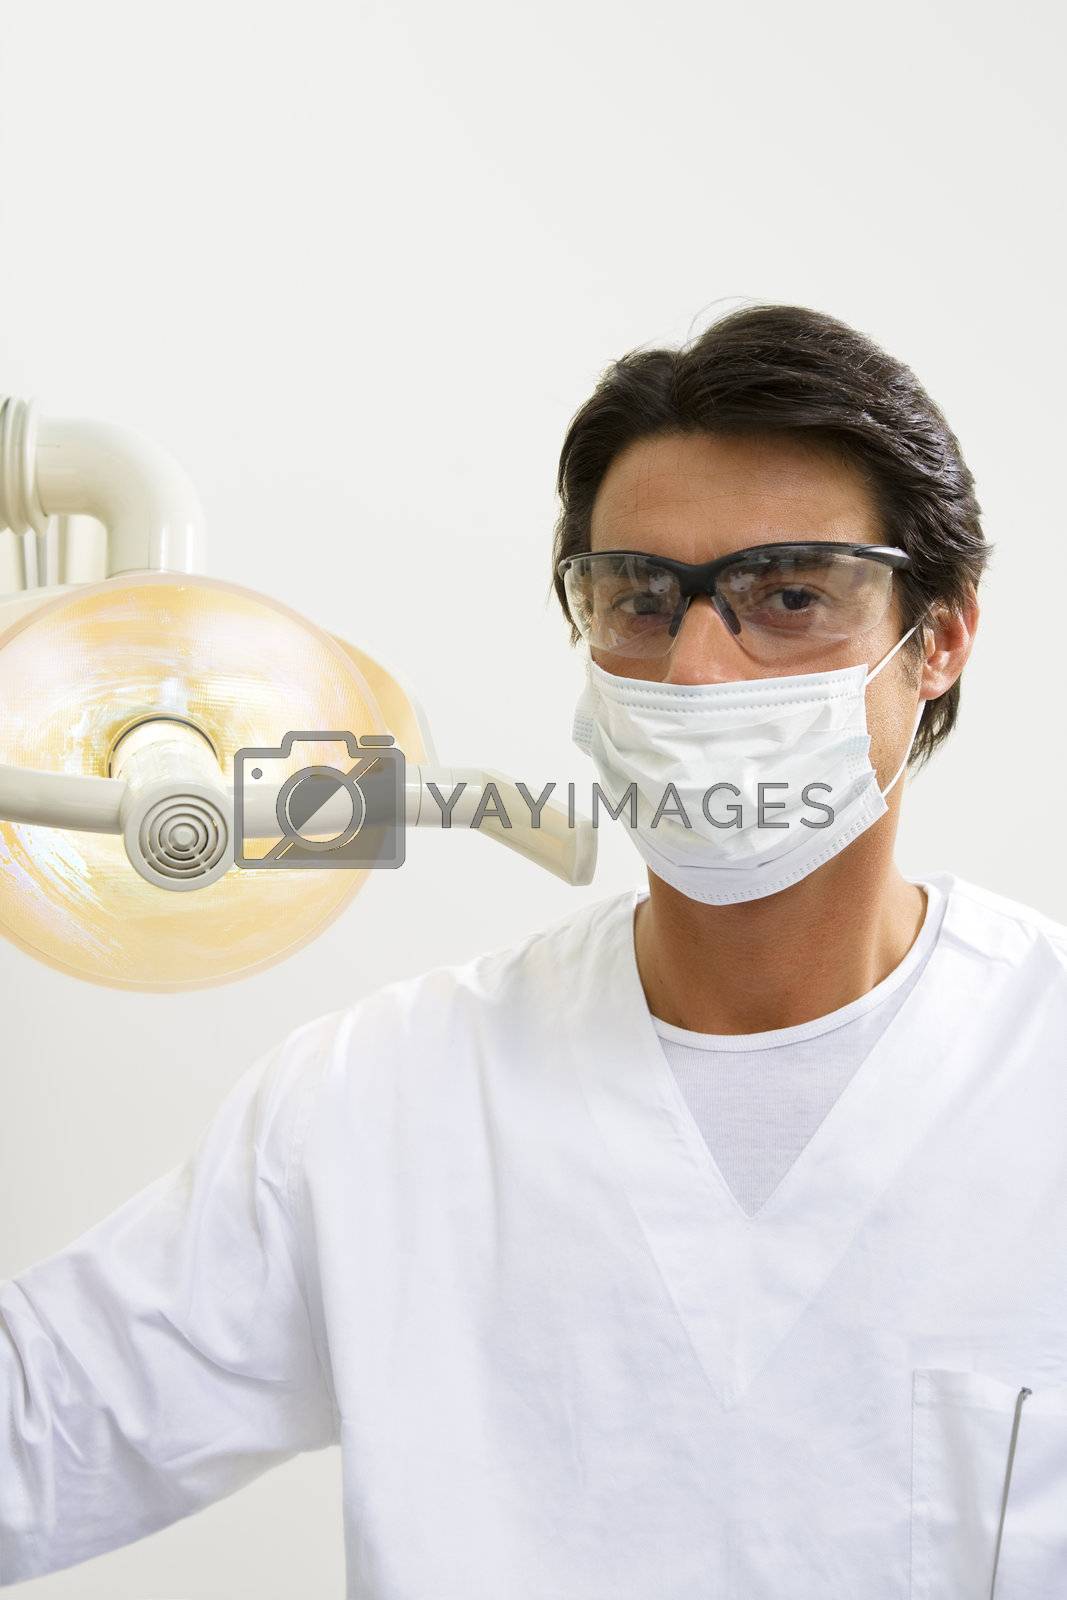 dentist turning on examination light